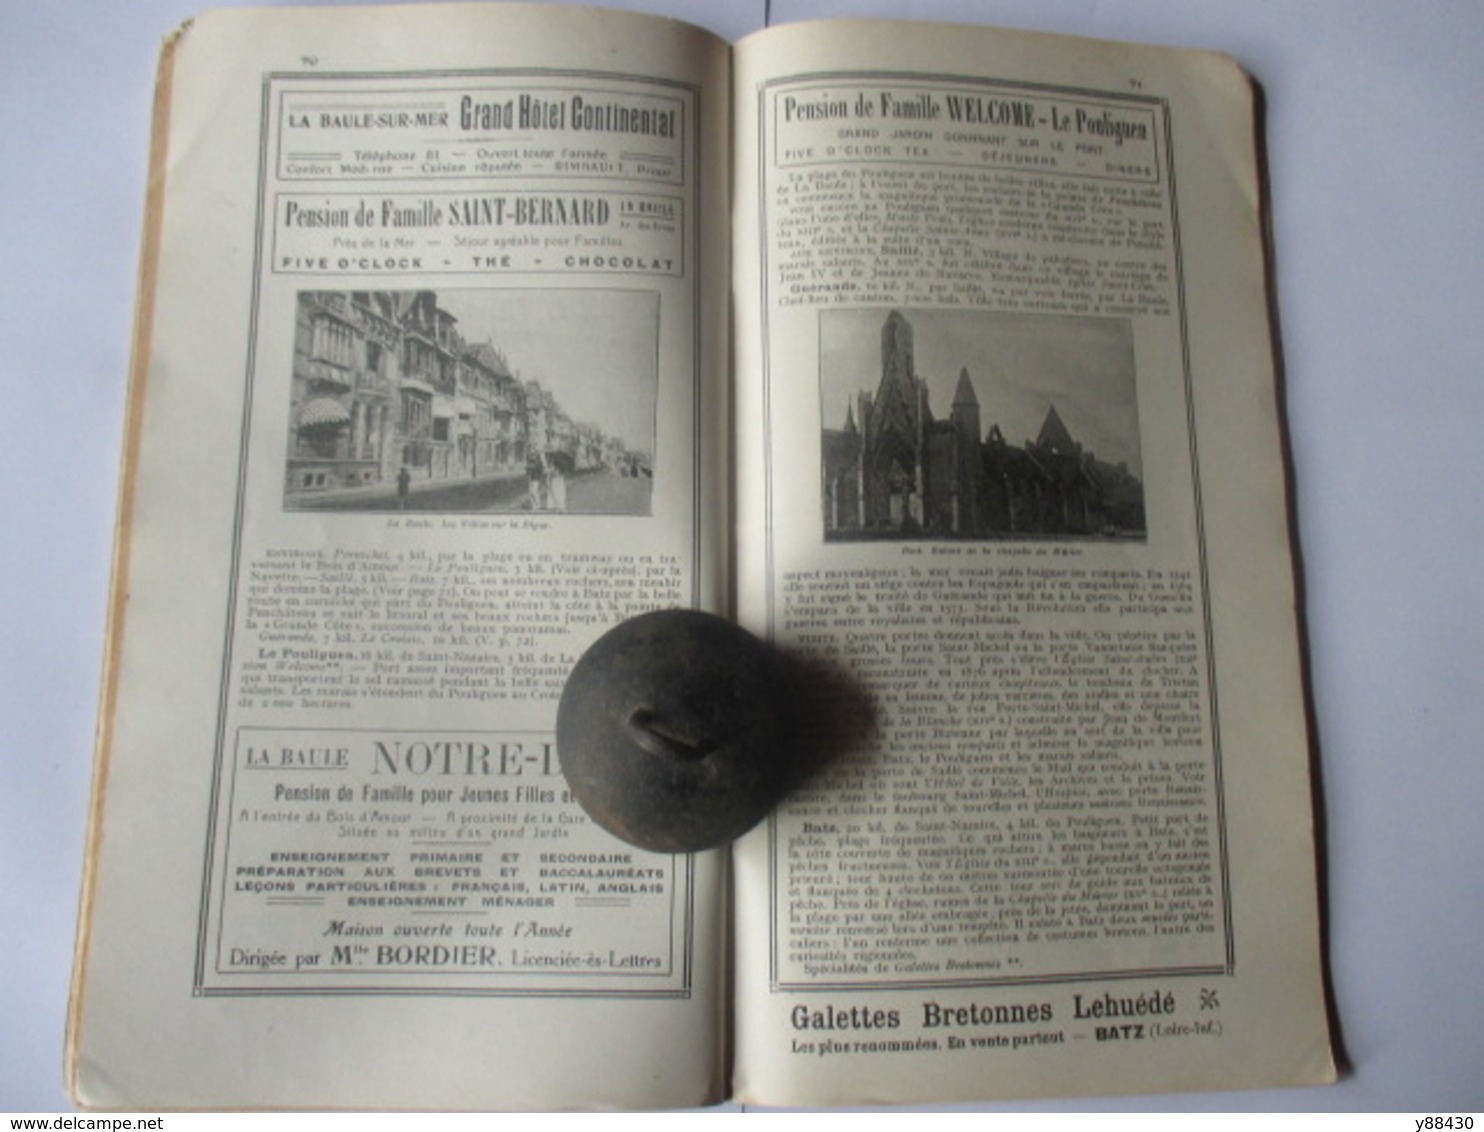 Livret Guides du Touriste THIOLIER de 1922 - LA BRETAGNE - du Mont St Michel à Brest et Nantes - 98 pages - 17 photos